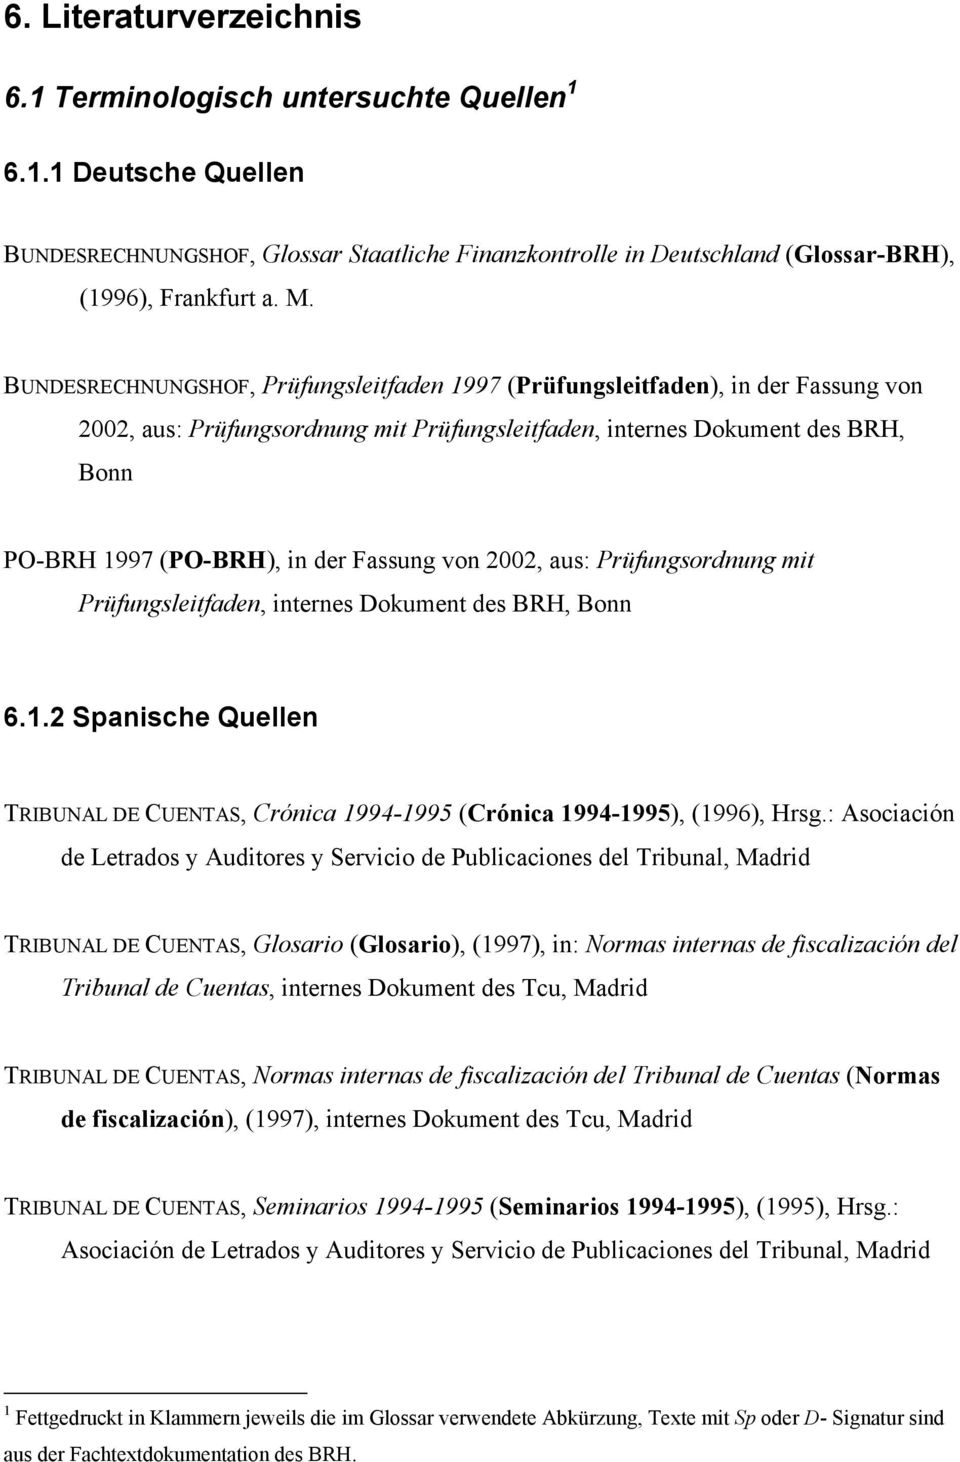 Fassung von 2002, aus: Prüfungsordnung mit Prüfungsleitfaden, internes Dokument des BRH, Bonn 6.1.2 Spanische Quellen TRIBUNAL DE CUENTAS, Crónica 1994-1995 (Crónica 1994-1995), (1996), Hrsg.